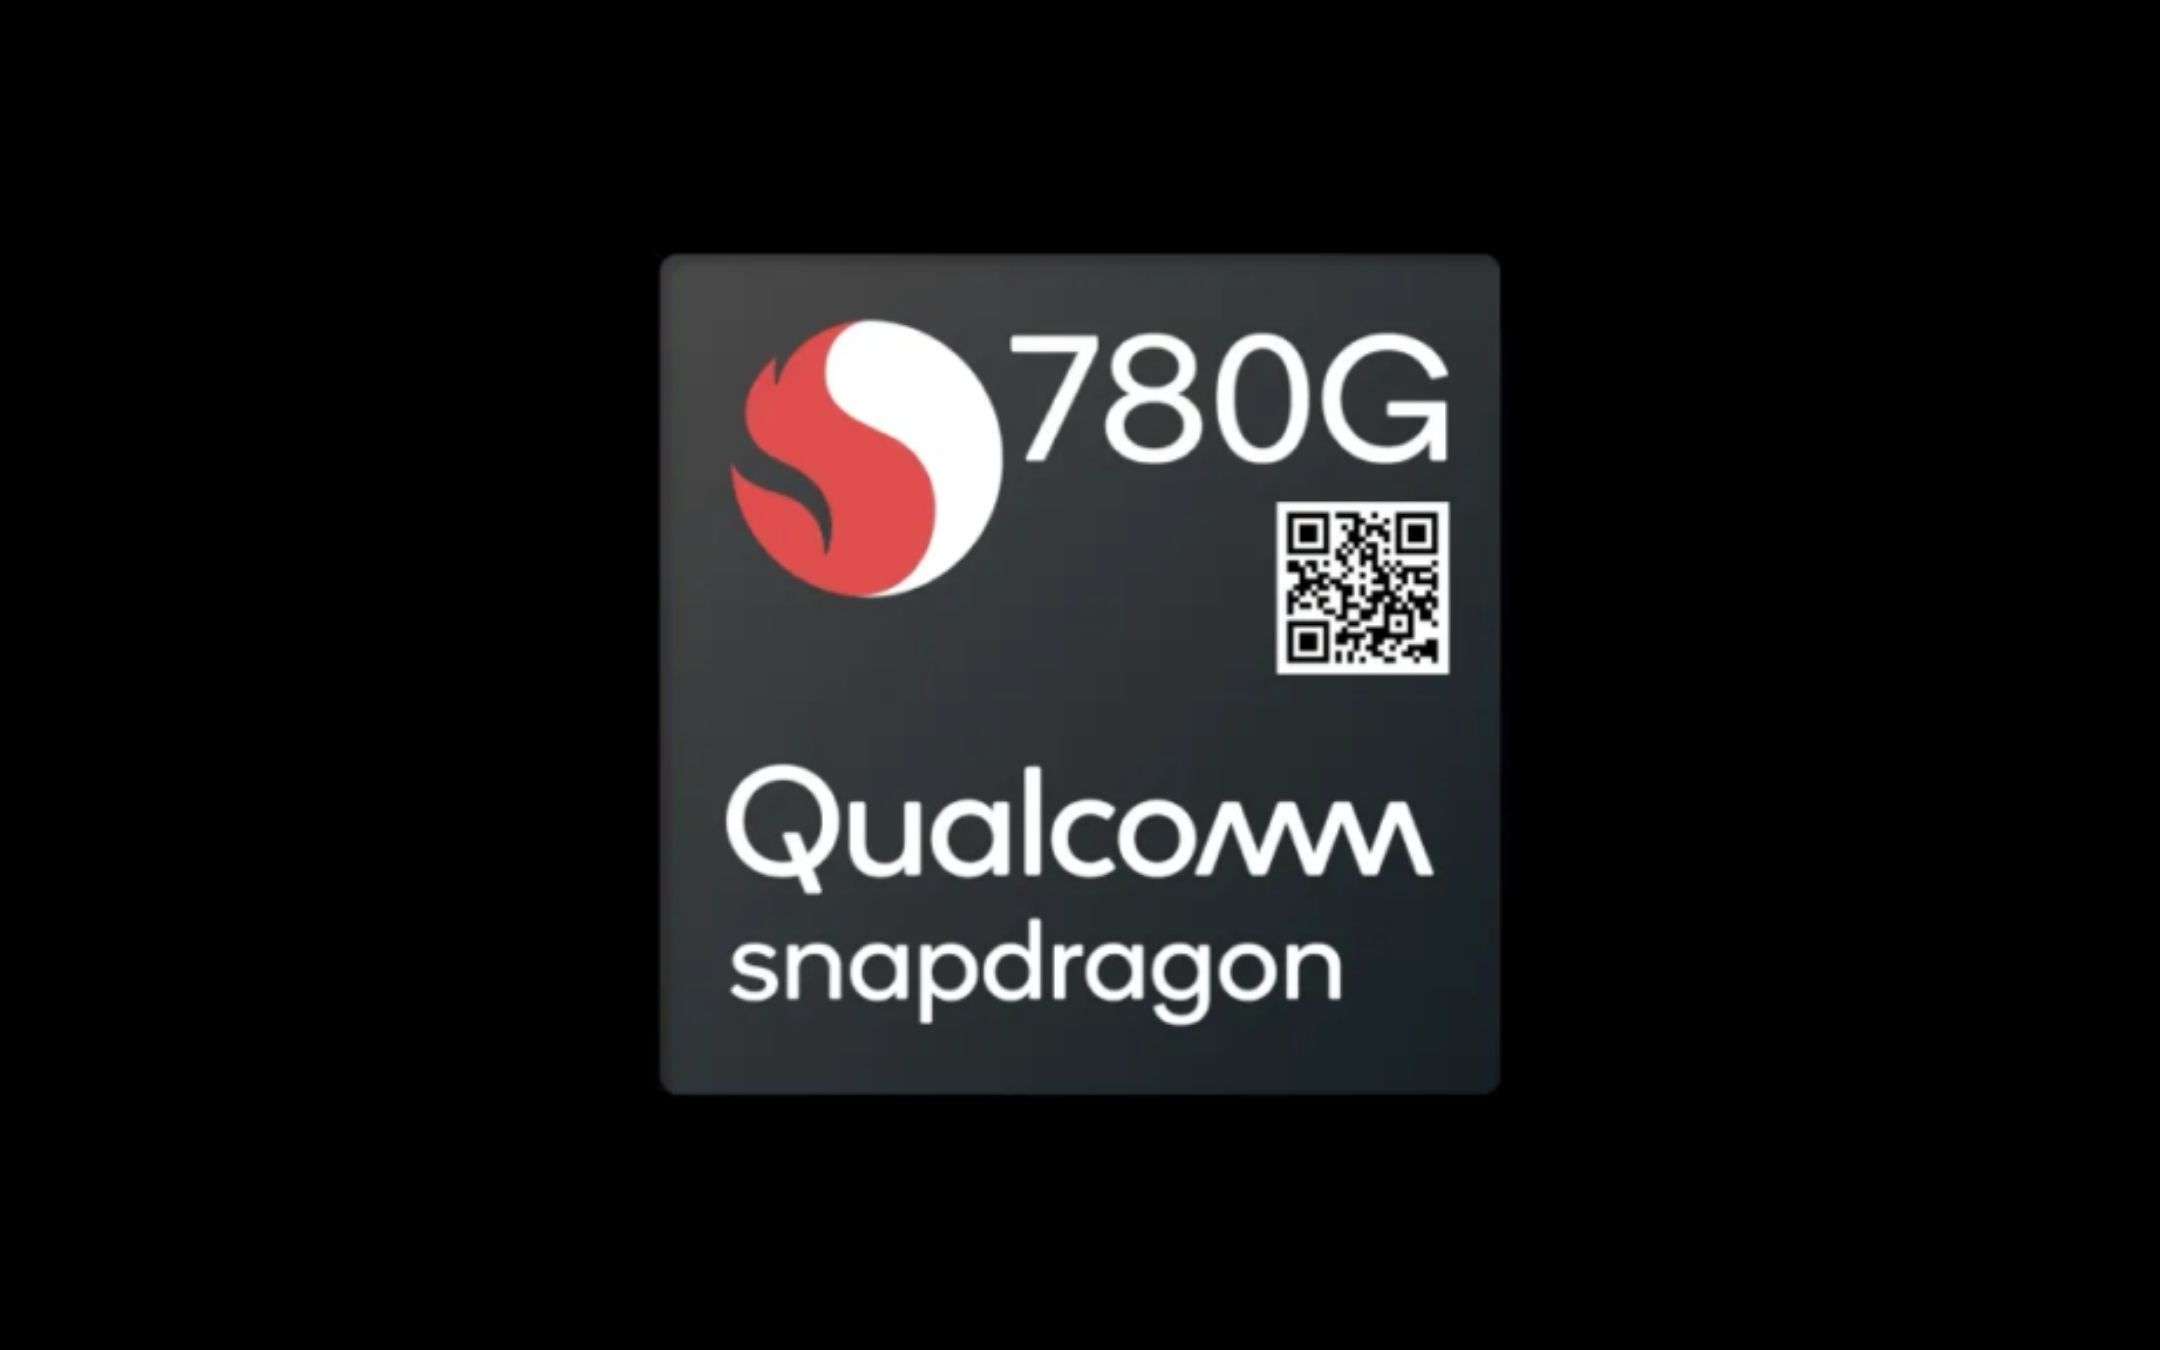 Il mistero dello Snapdragon 780G scomparso